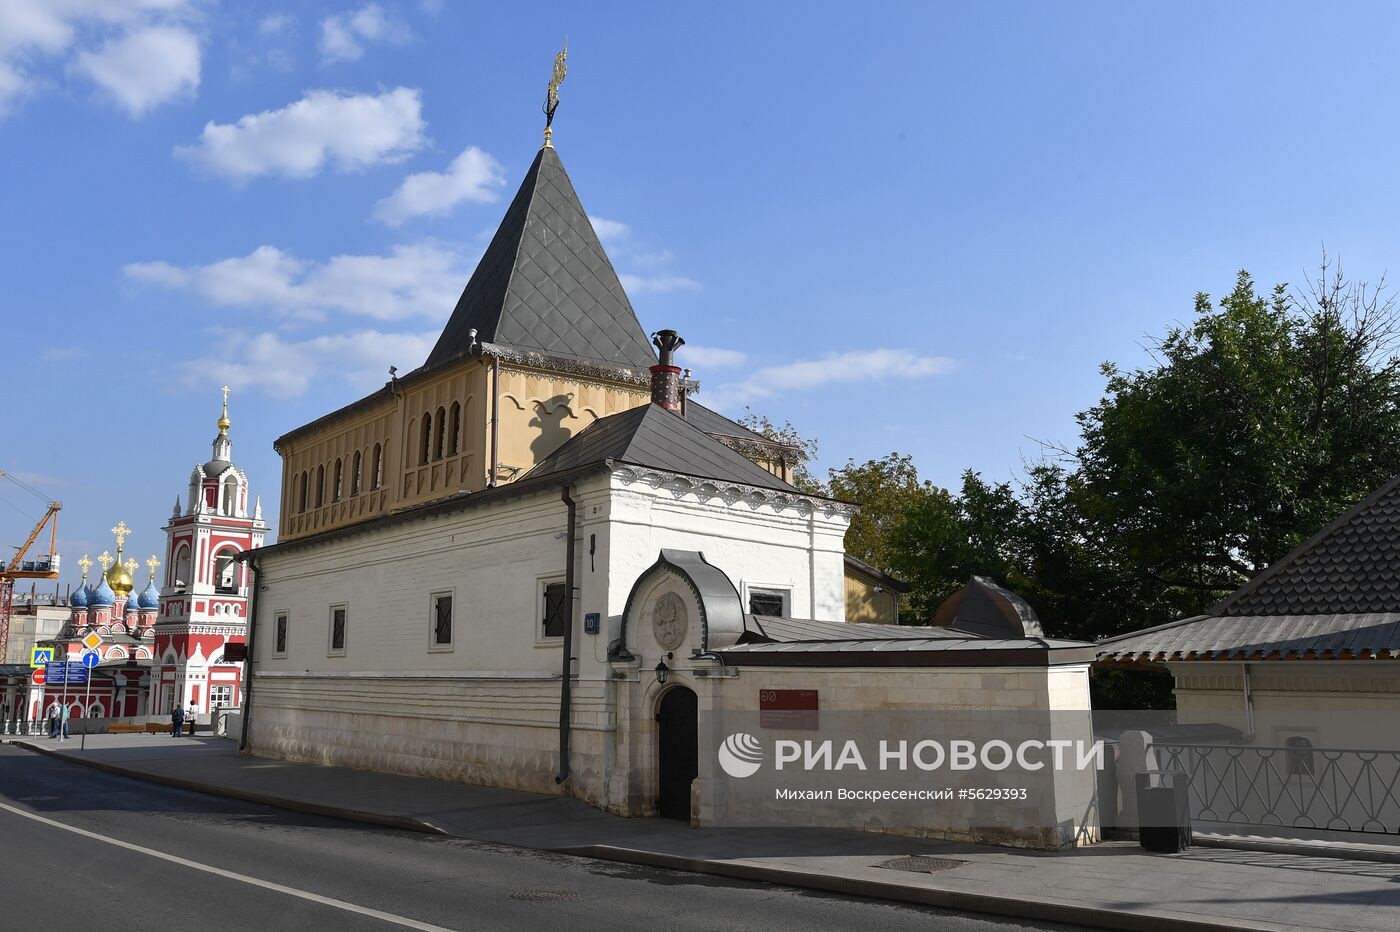 Открытие музея "Палаты бояр Романовых" после реставрации